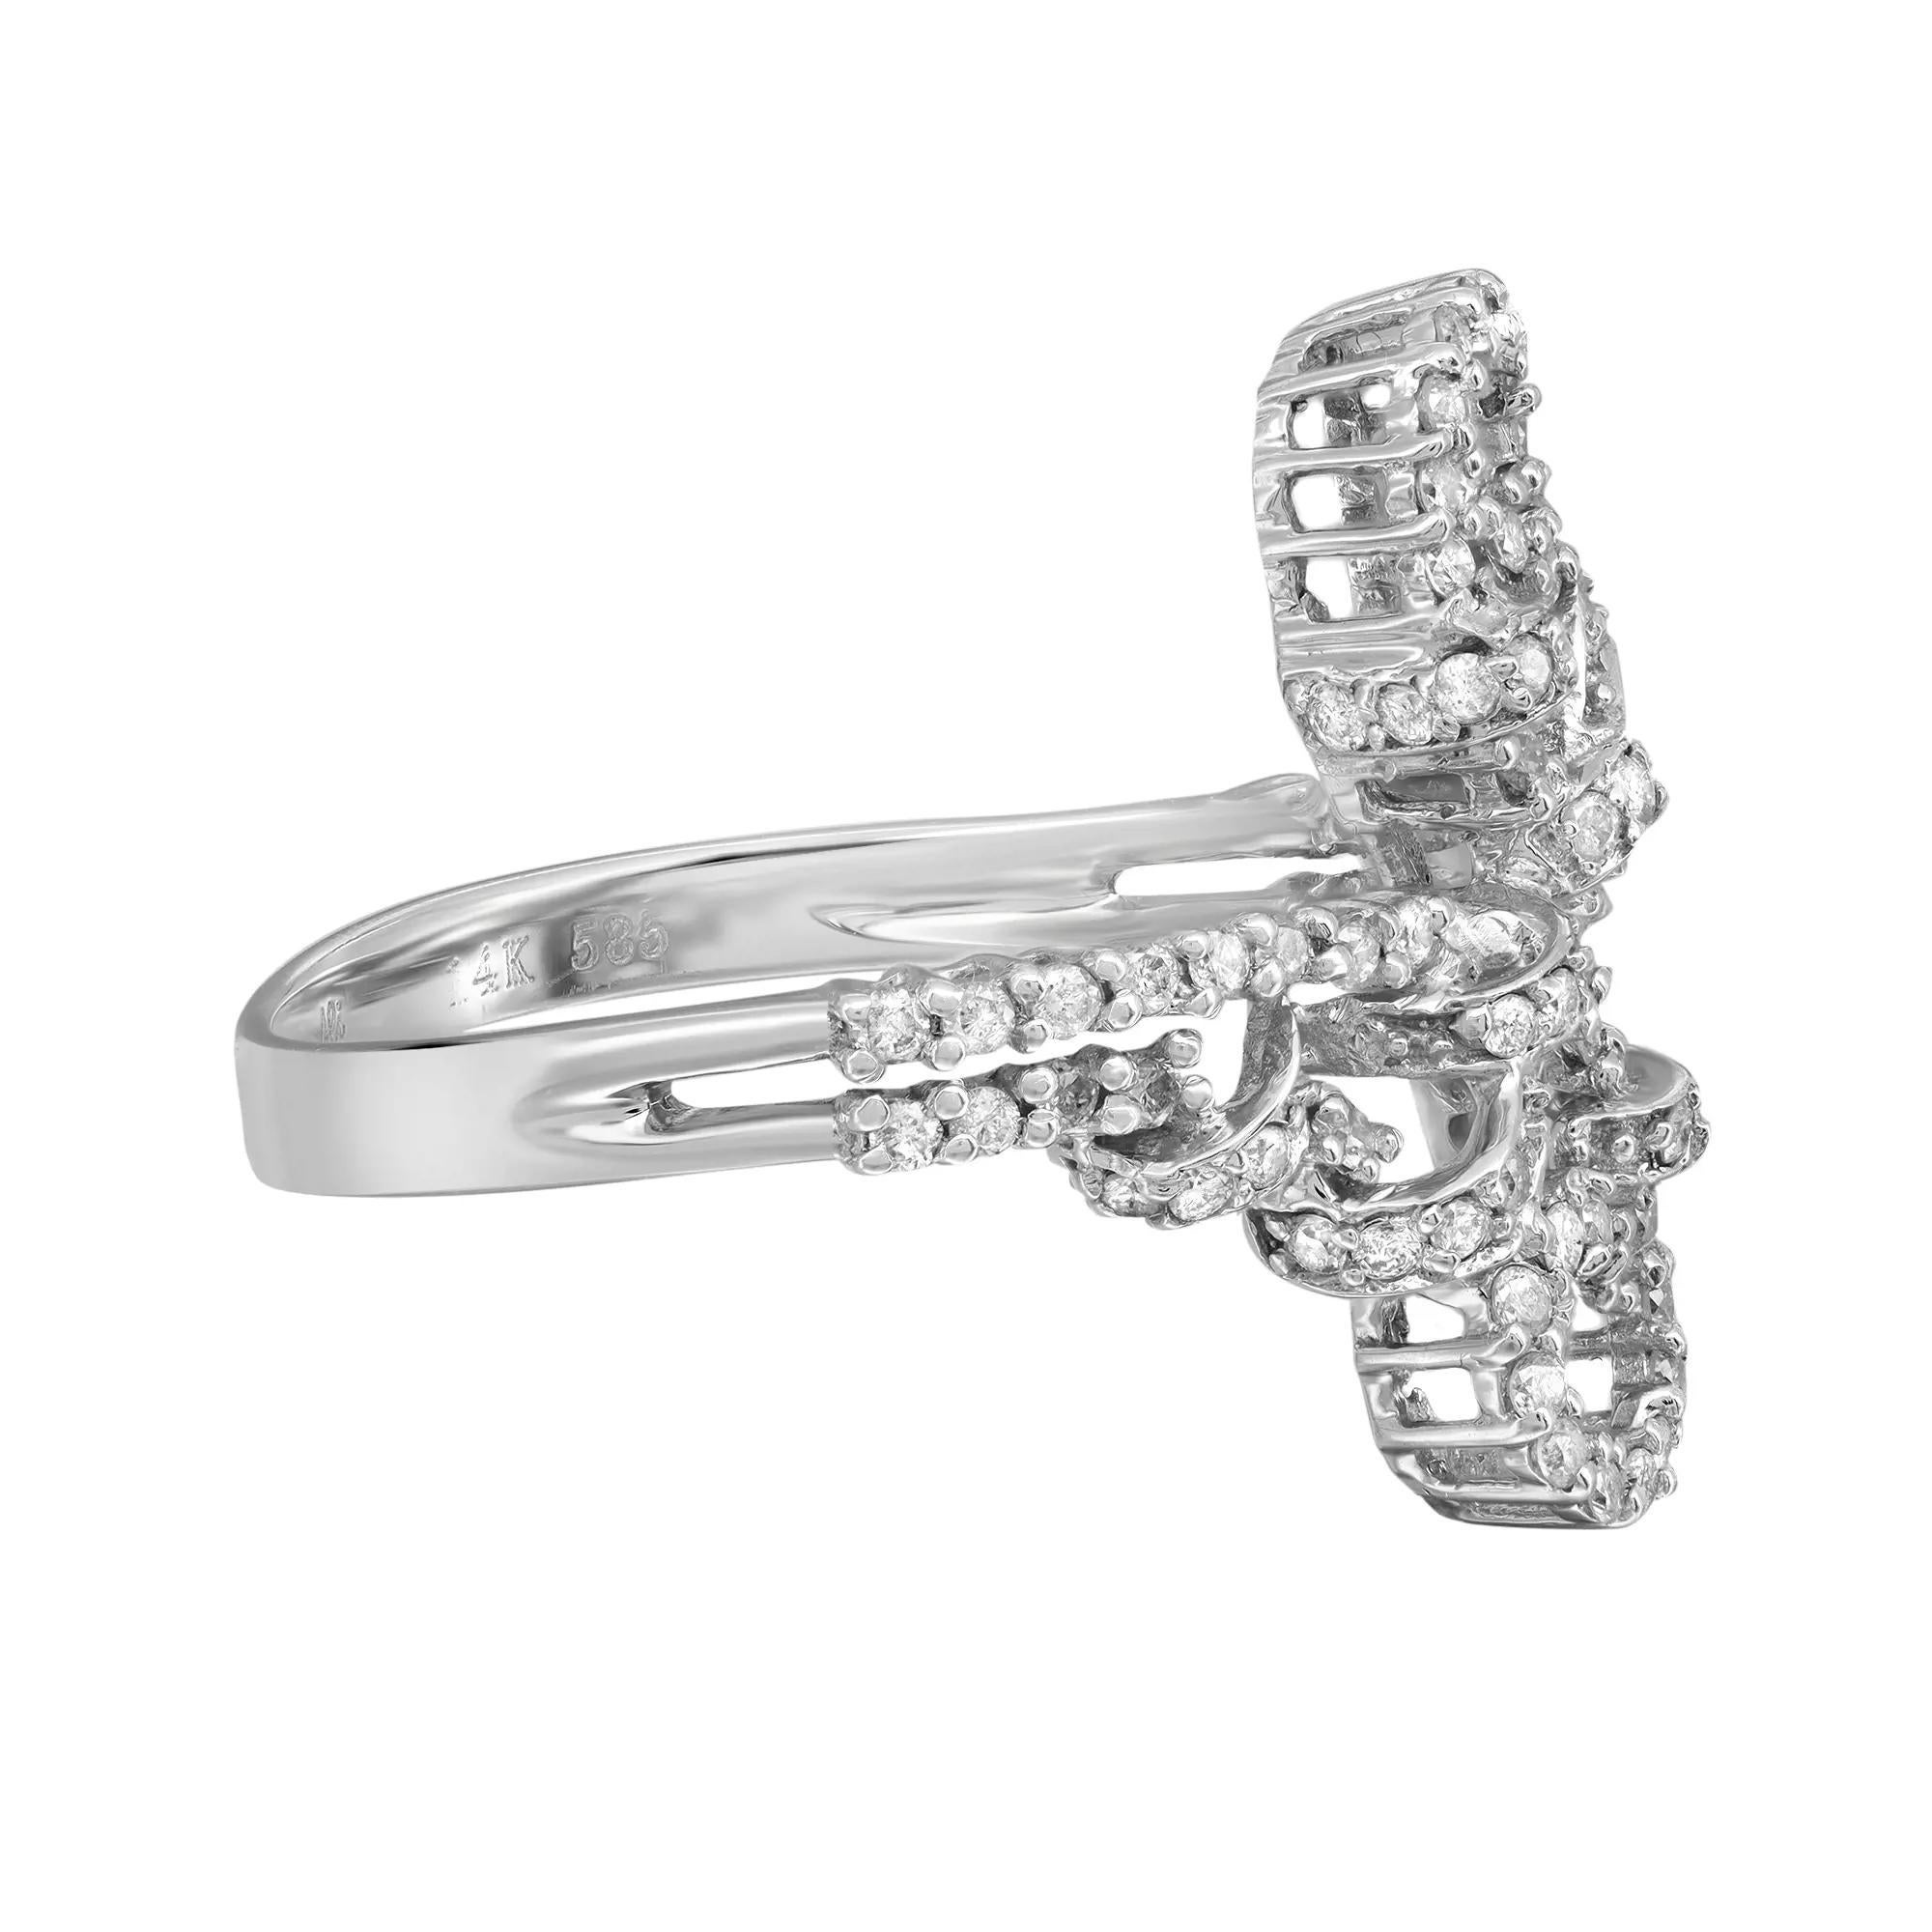 Sprechen Sie über das kühne und schöne Design des Diamantrings. Dieser Ring ist mit feinen, runden Diamanten im Brillantschliff besetzt, die in hochglanzpoliertem 14-Karat-Weißgold gefertigt sind. Gesamtgewicht des Diamanten: 0,62 Karat mit der